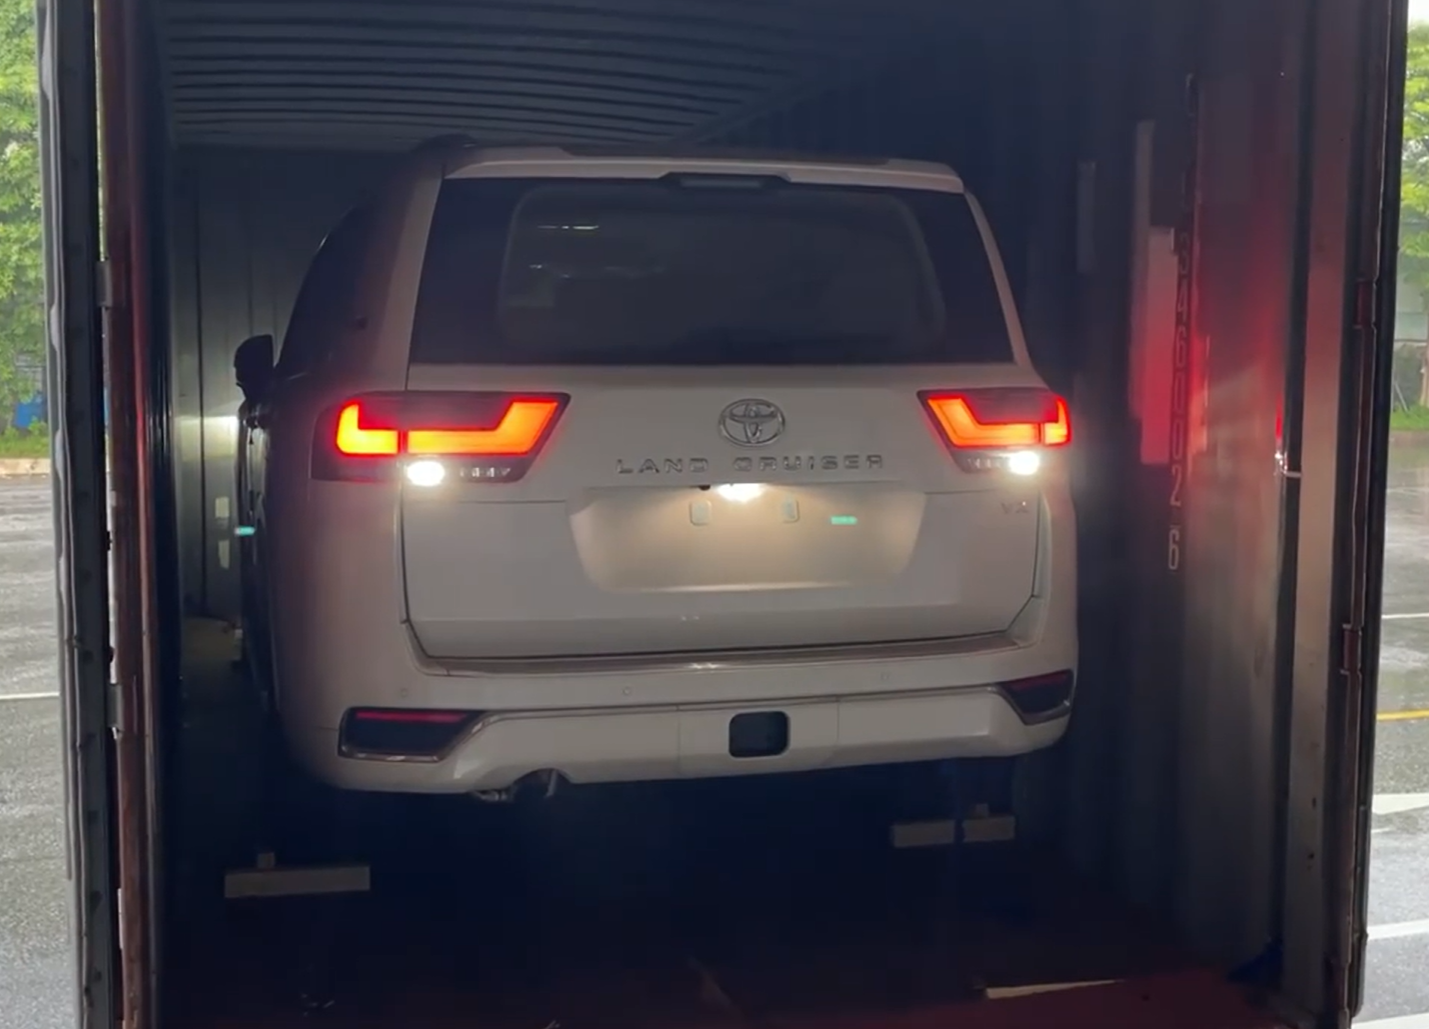 Chật vật lùi Toyota Land Cruiser ra khỏi container, tài xế vào xe bằng cách nào khi không mở được cửa? - Ảnh 1.